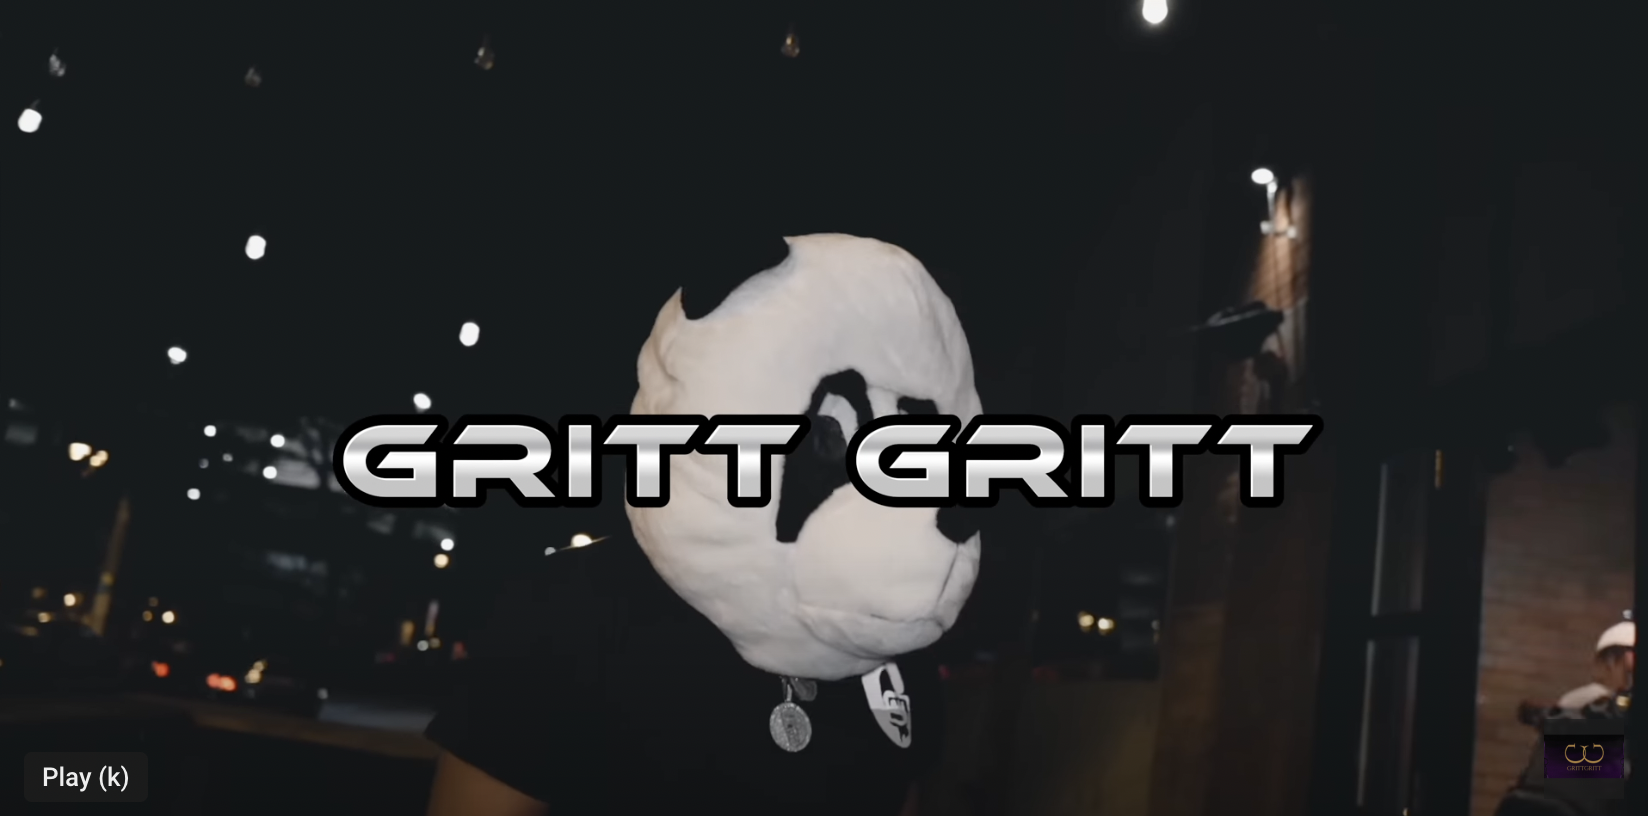 Gritt Gritt – 3:44AM Music Video